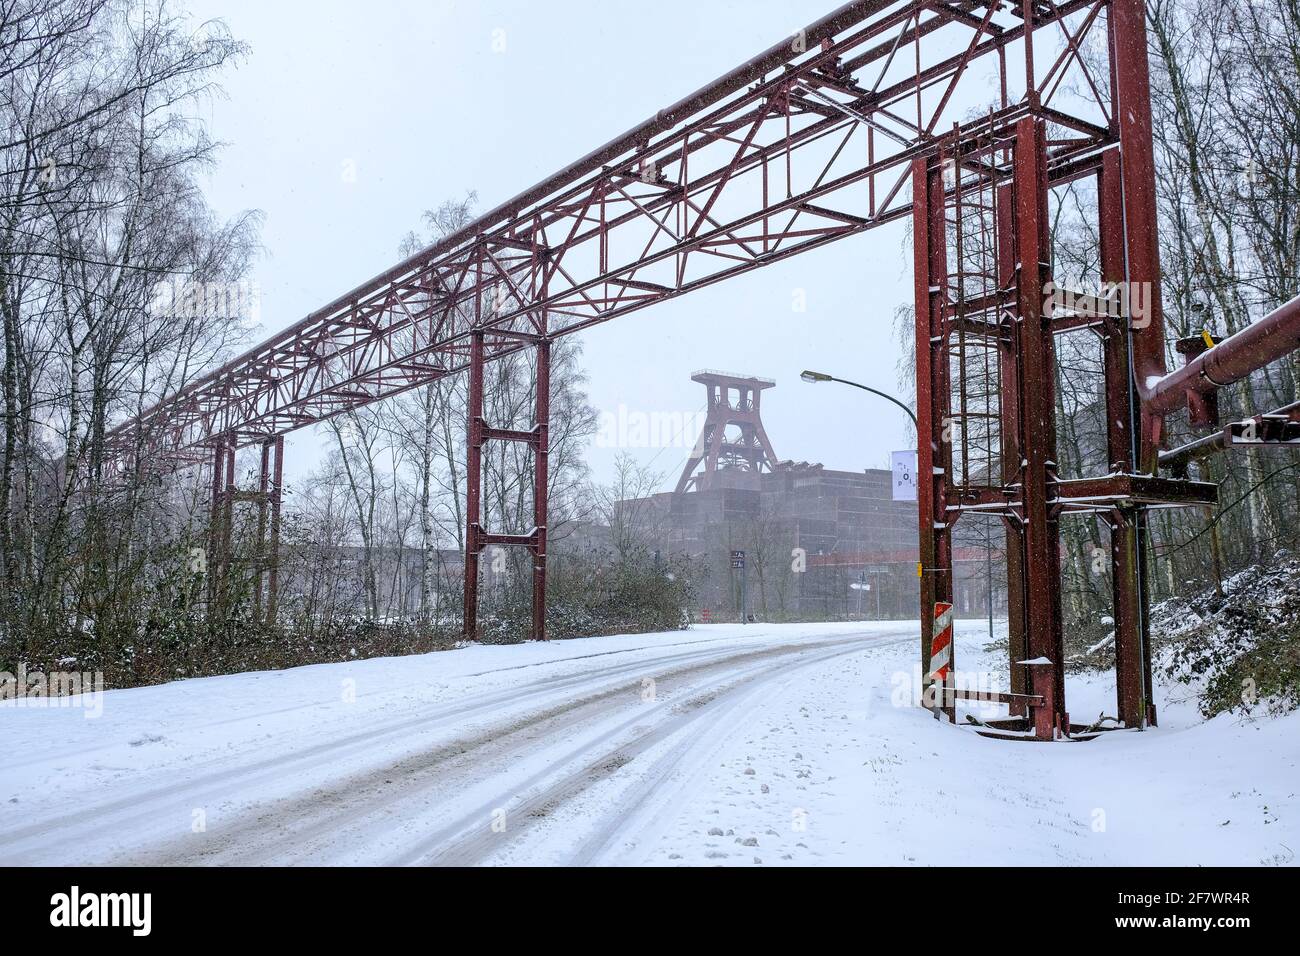 07.02.2021, Essen, Nordrhein-Westfalen, Deutschland - Zeche Zollverein im Schnee Stock Photo